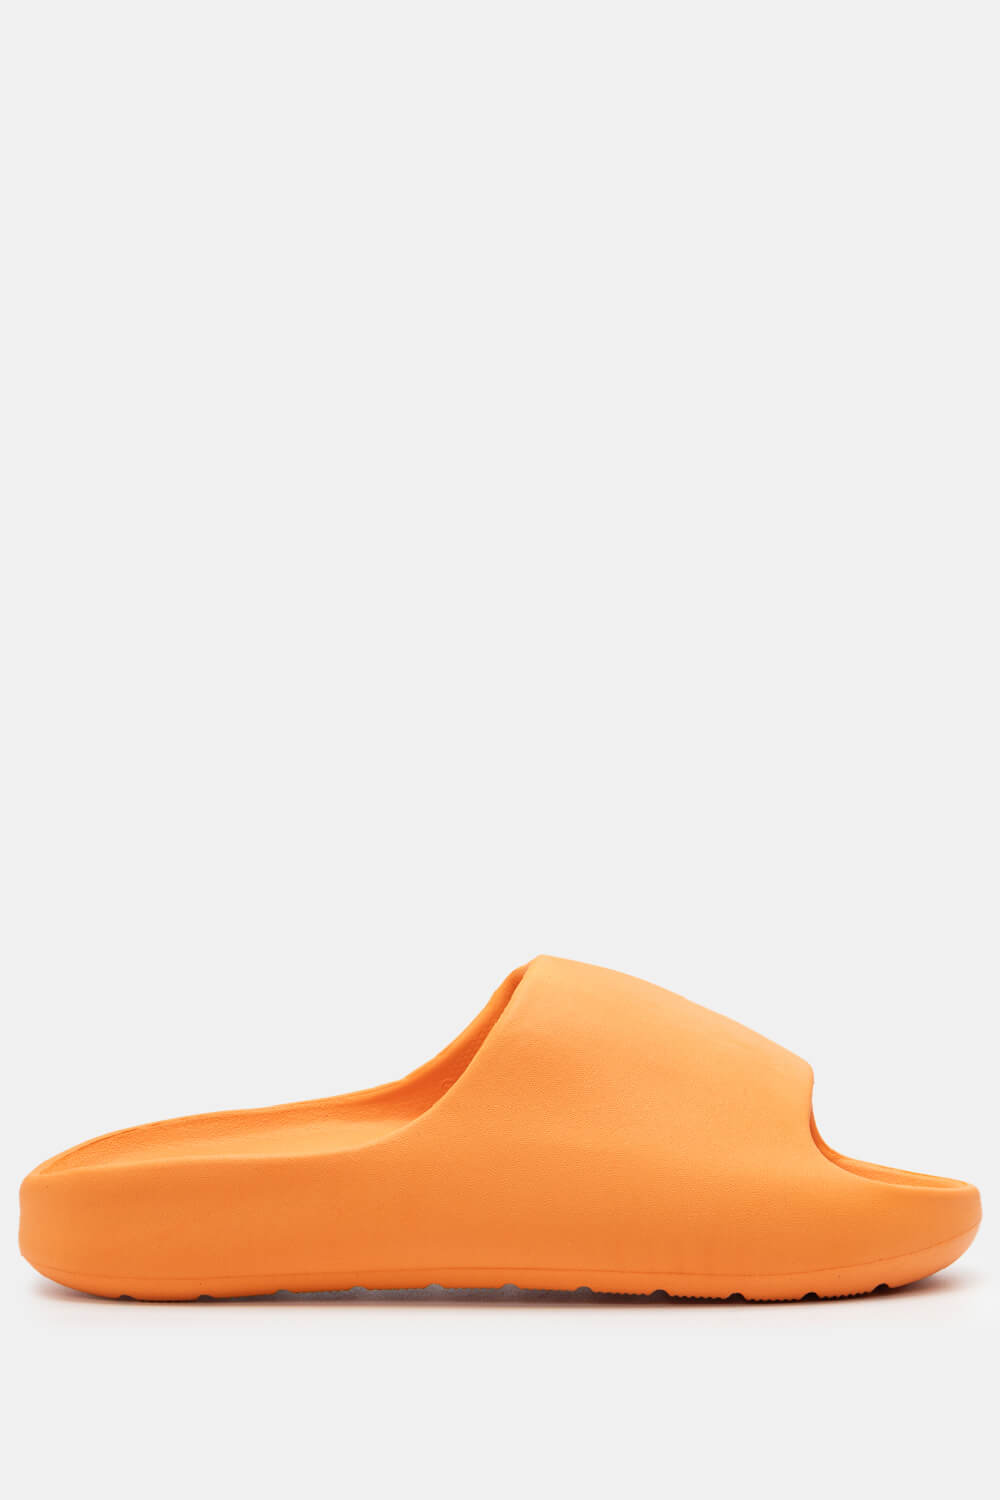 ΠΡΟΪΟΝΤΑ > ΠΑΠΟΥΤΣΙΑ > Jelly Shoes Παντόφλες Δίσολες Μονόχρωμες - Πορτοκαλί